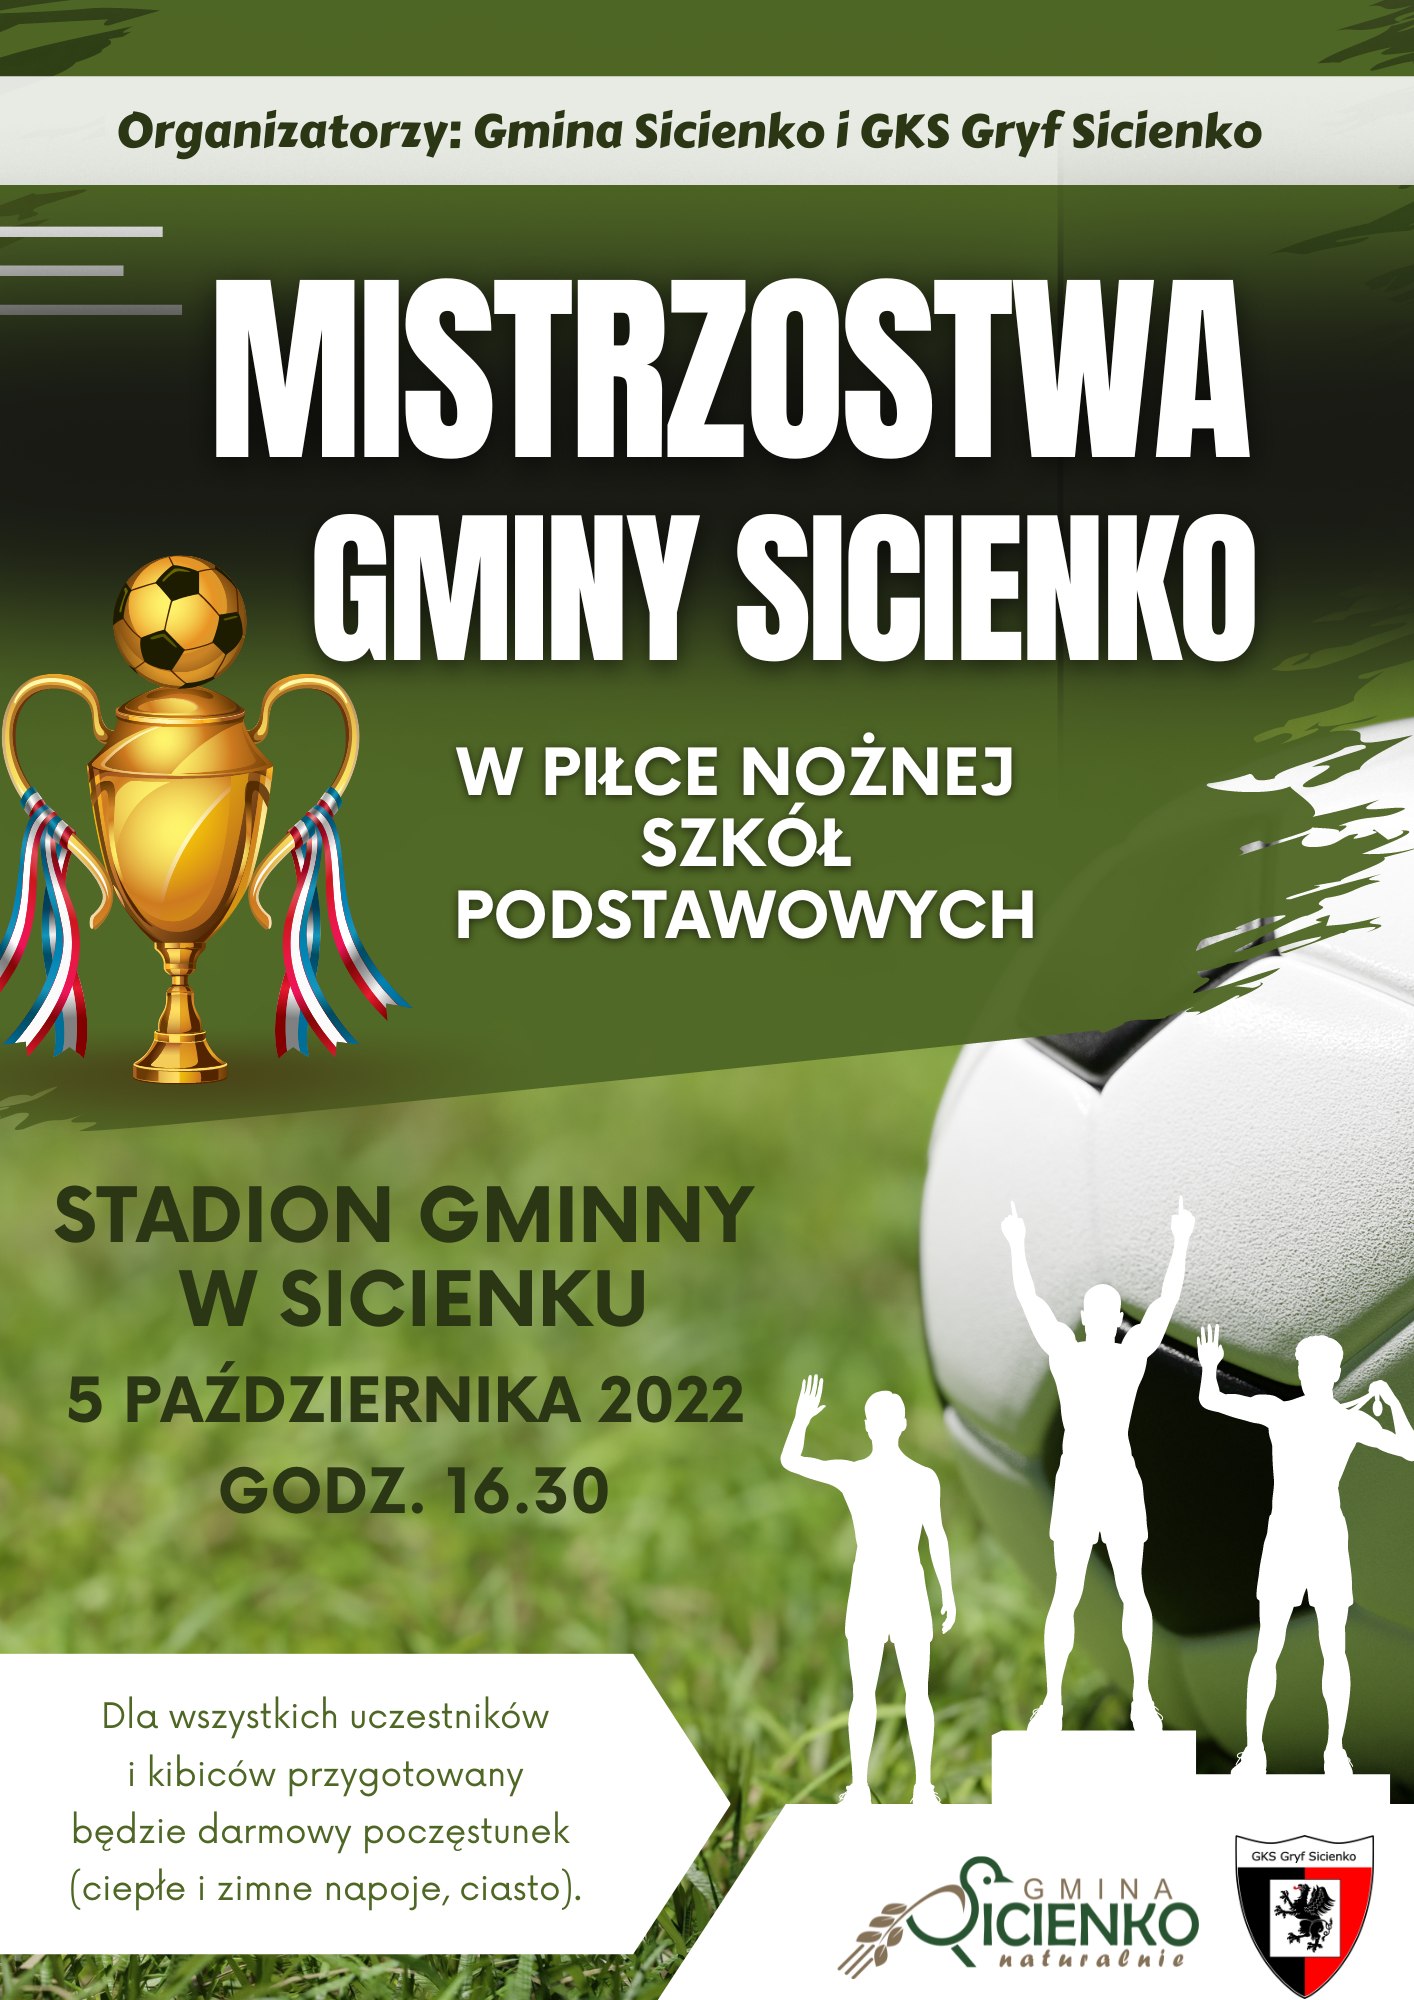 Mistrzostwa Gminy Sicienko w piłce nożnej Szkół Podstawowych